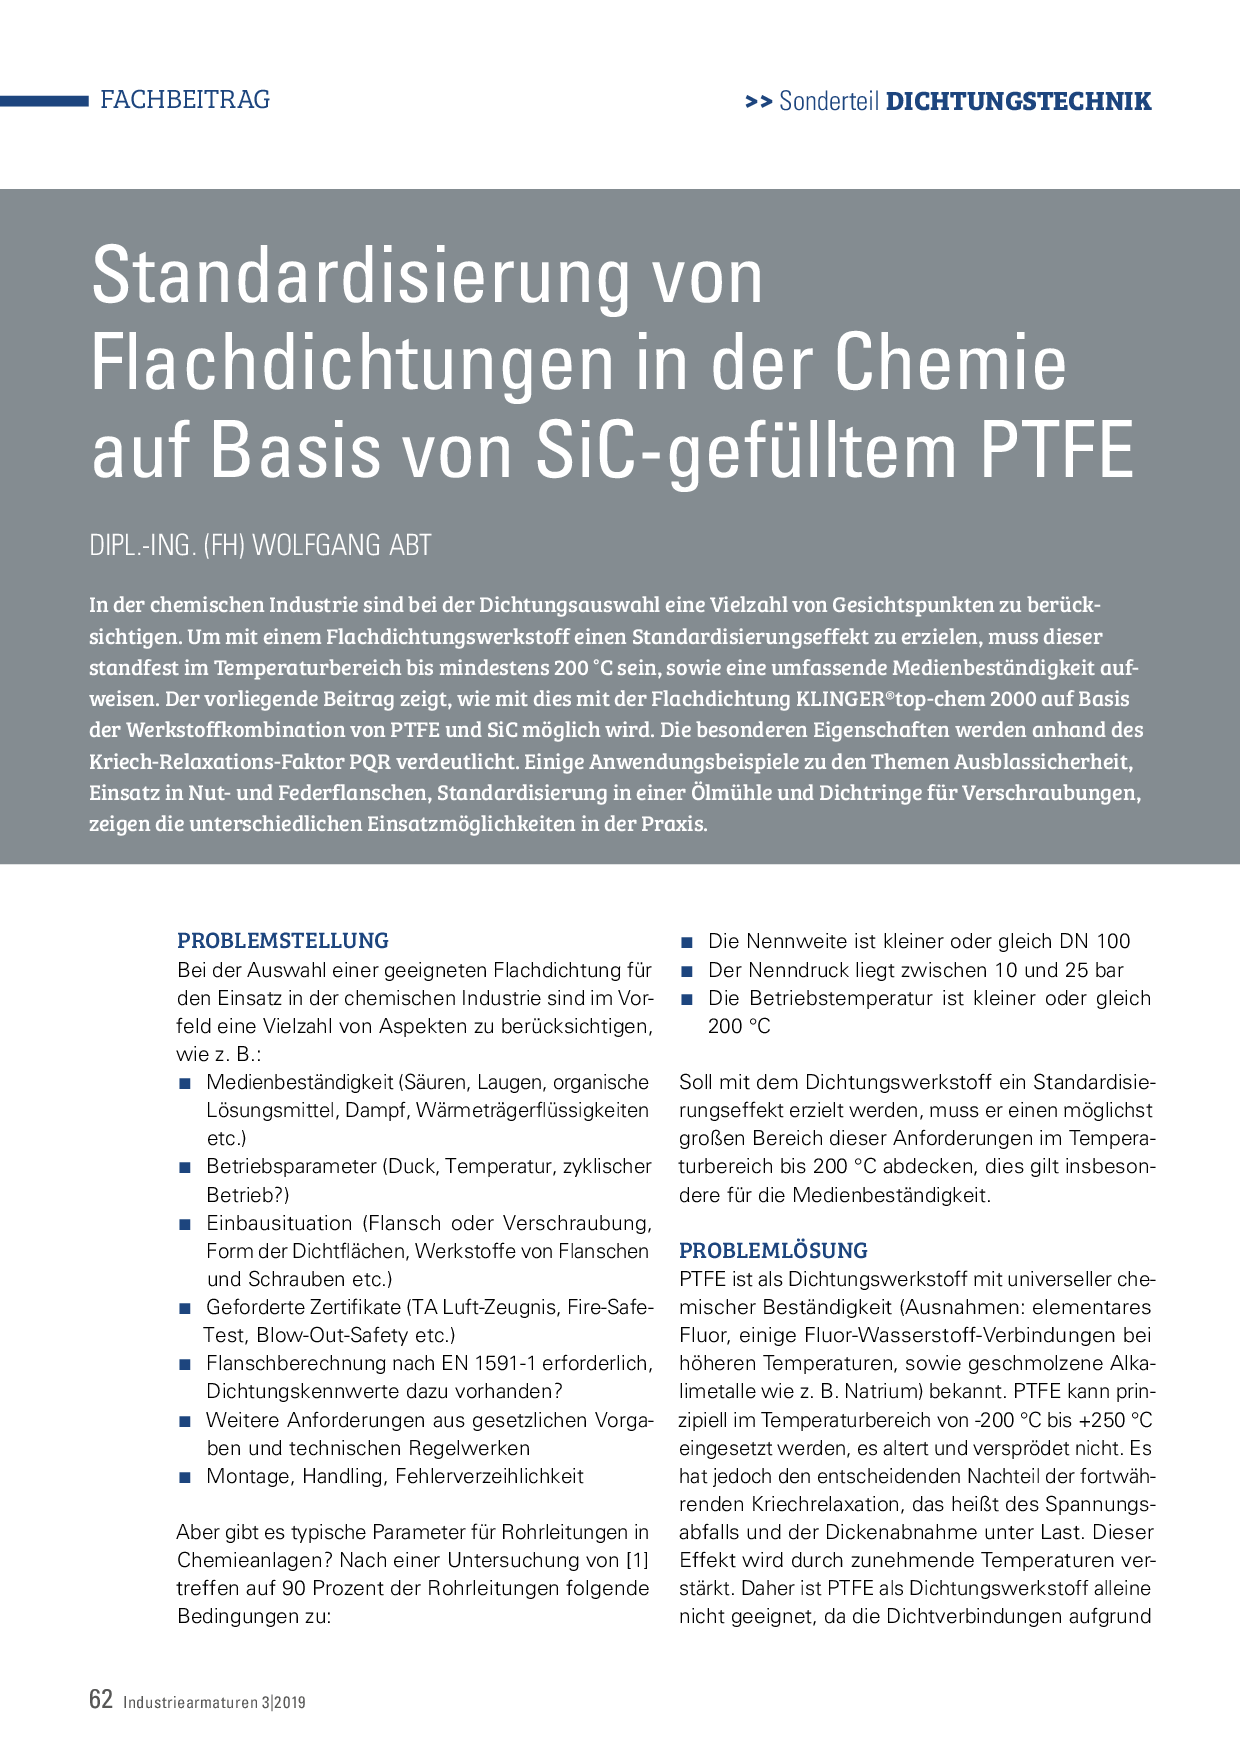 Standardisierung von Flachdichtungen in der Chemie auf Basis von SiC-gefülltem PTFE